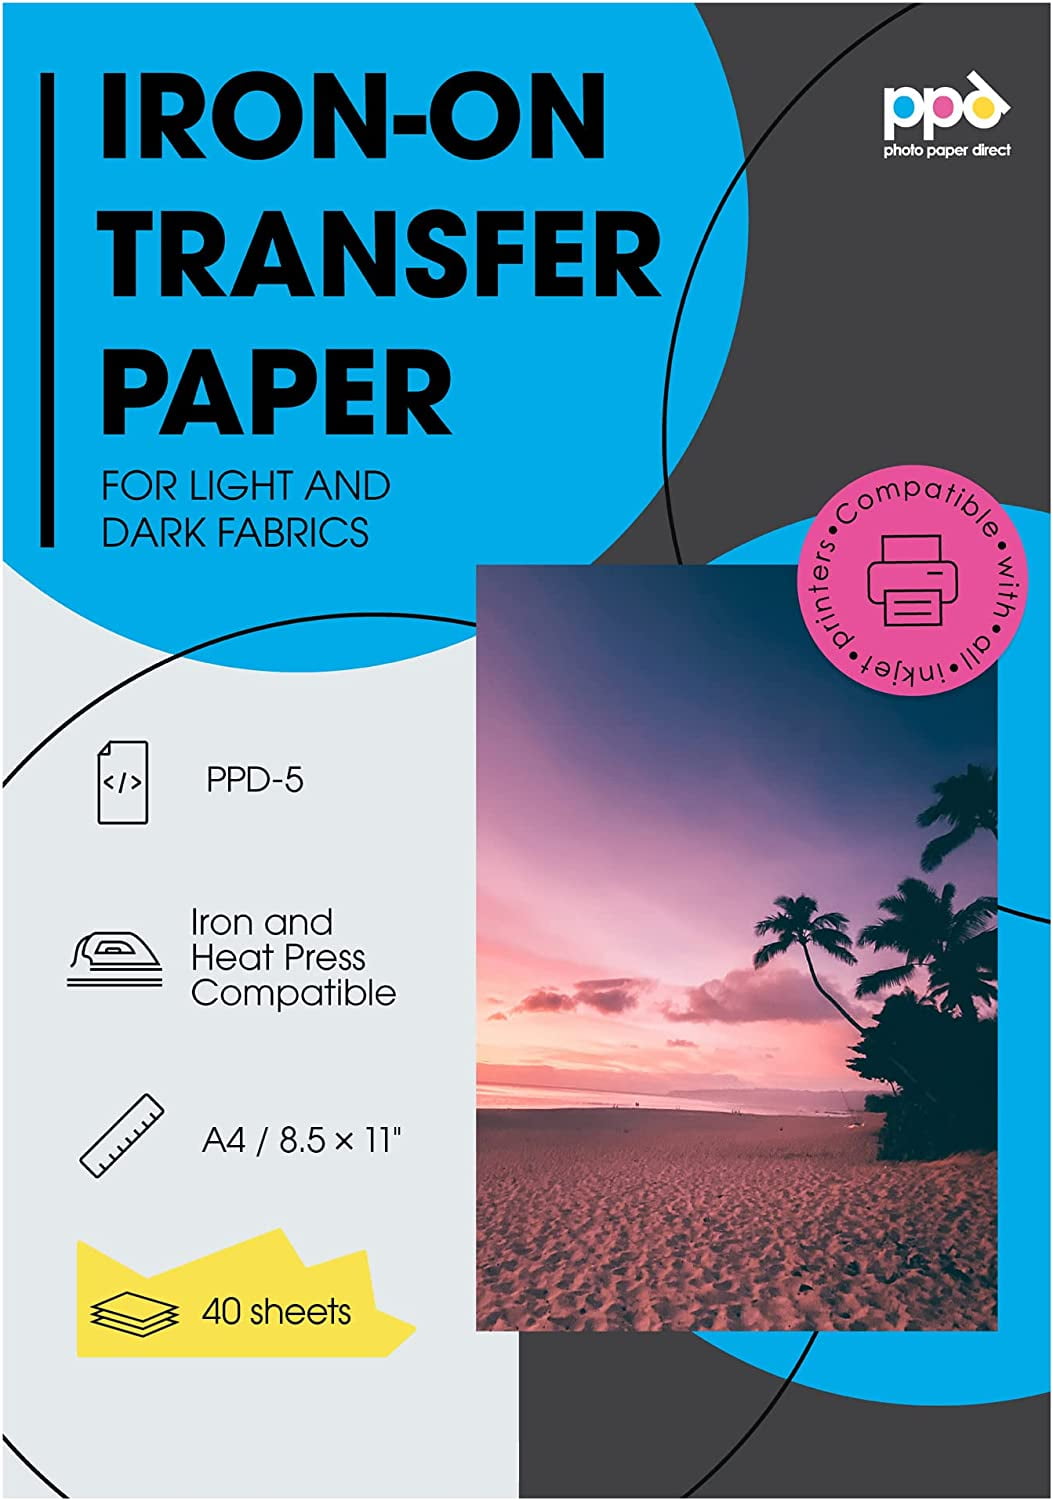 Transfer Master Iron-on Transfer Paper for Dark Fabric, Inkjet